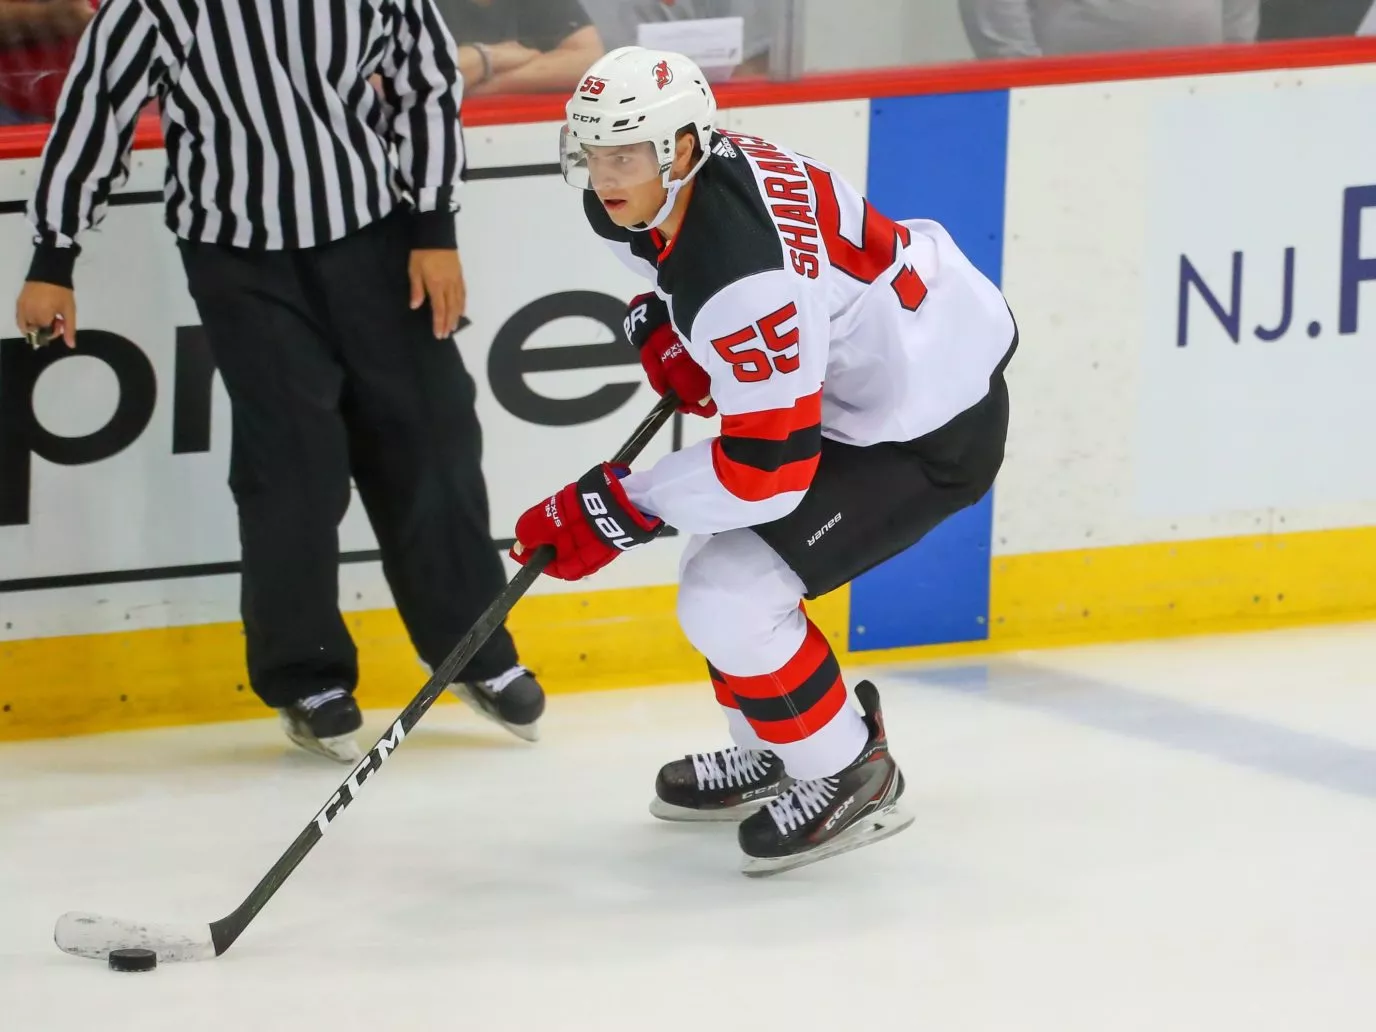 Белорусские хоккеисты Шарангович и Колячонок отметились забитыми шайбами в предсезонке НХЛ